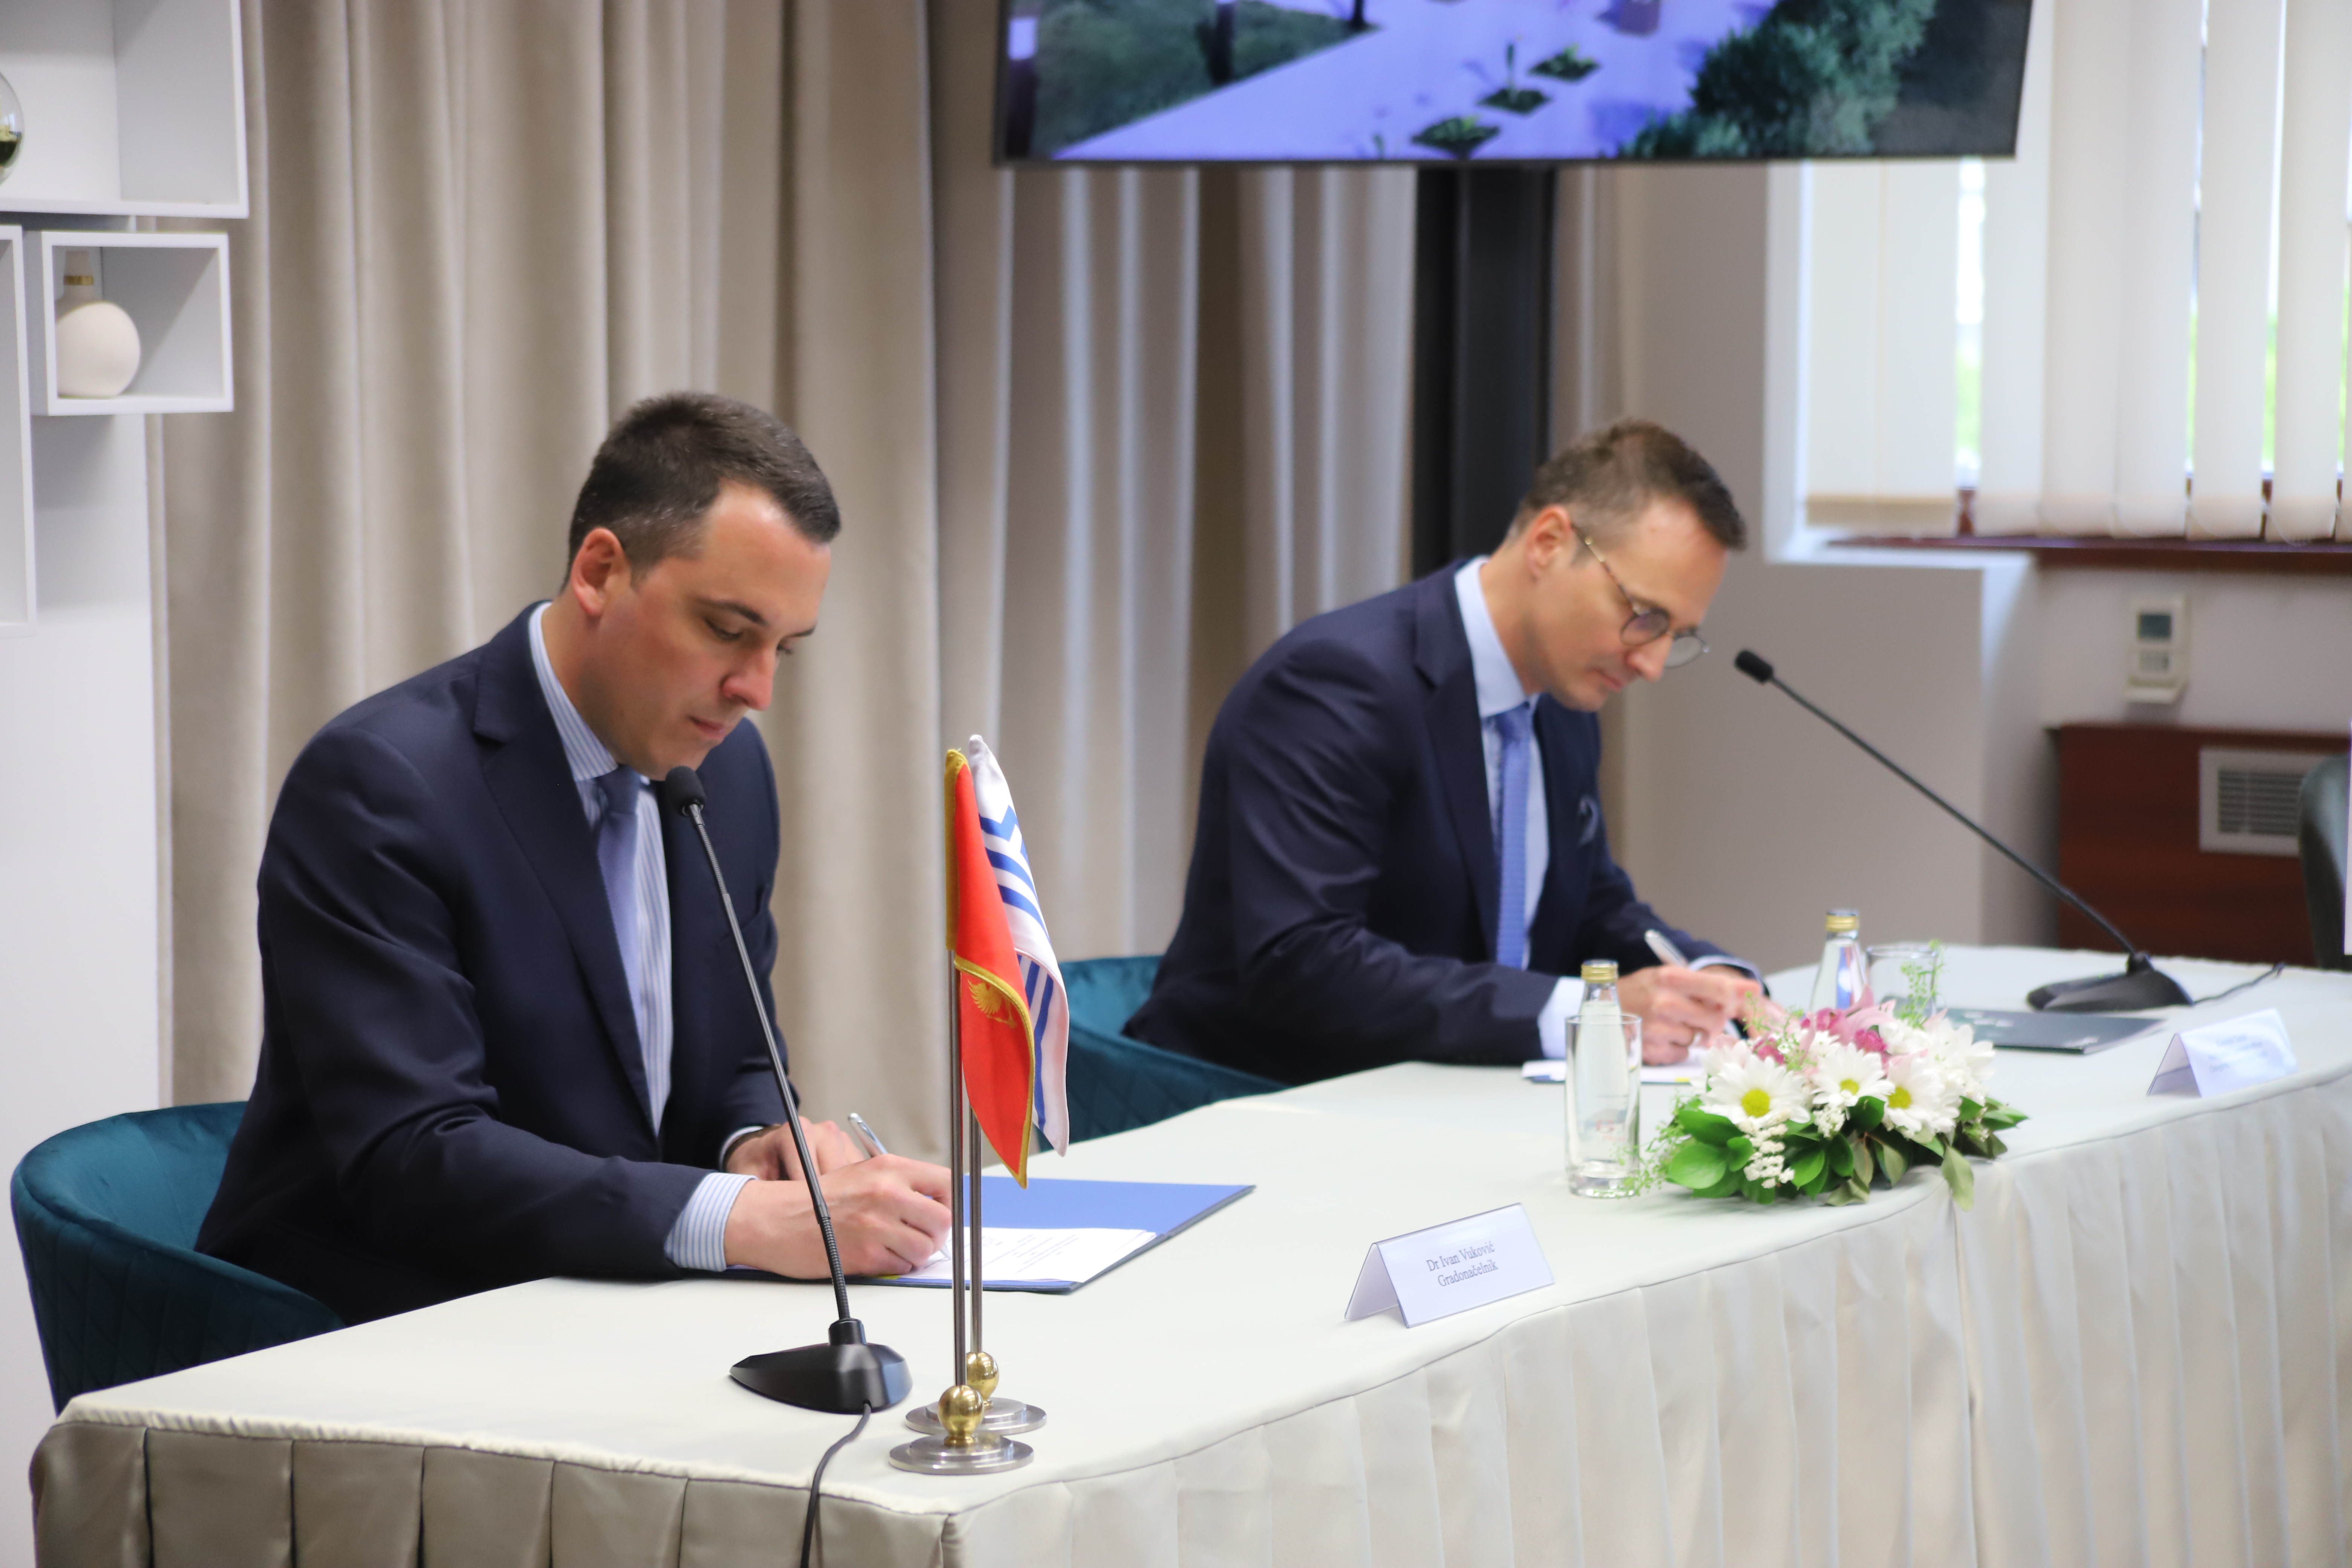 Glavni grad i CKB potpisali ugovor o donaciji; Podgorica dobija Dječju kuću - važan korak u borbi protiv nasilja nad djecom